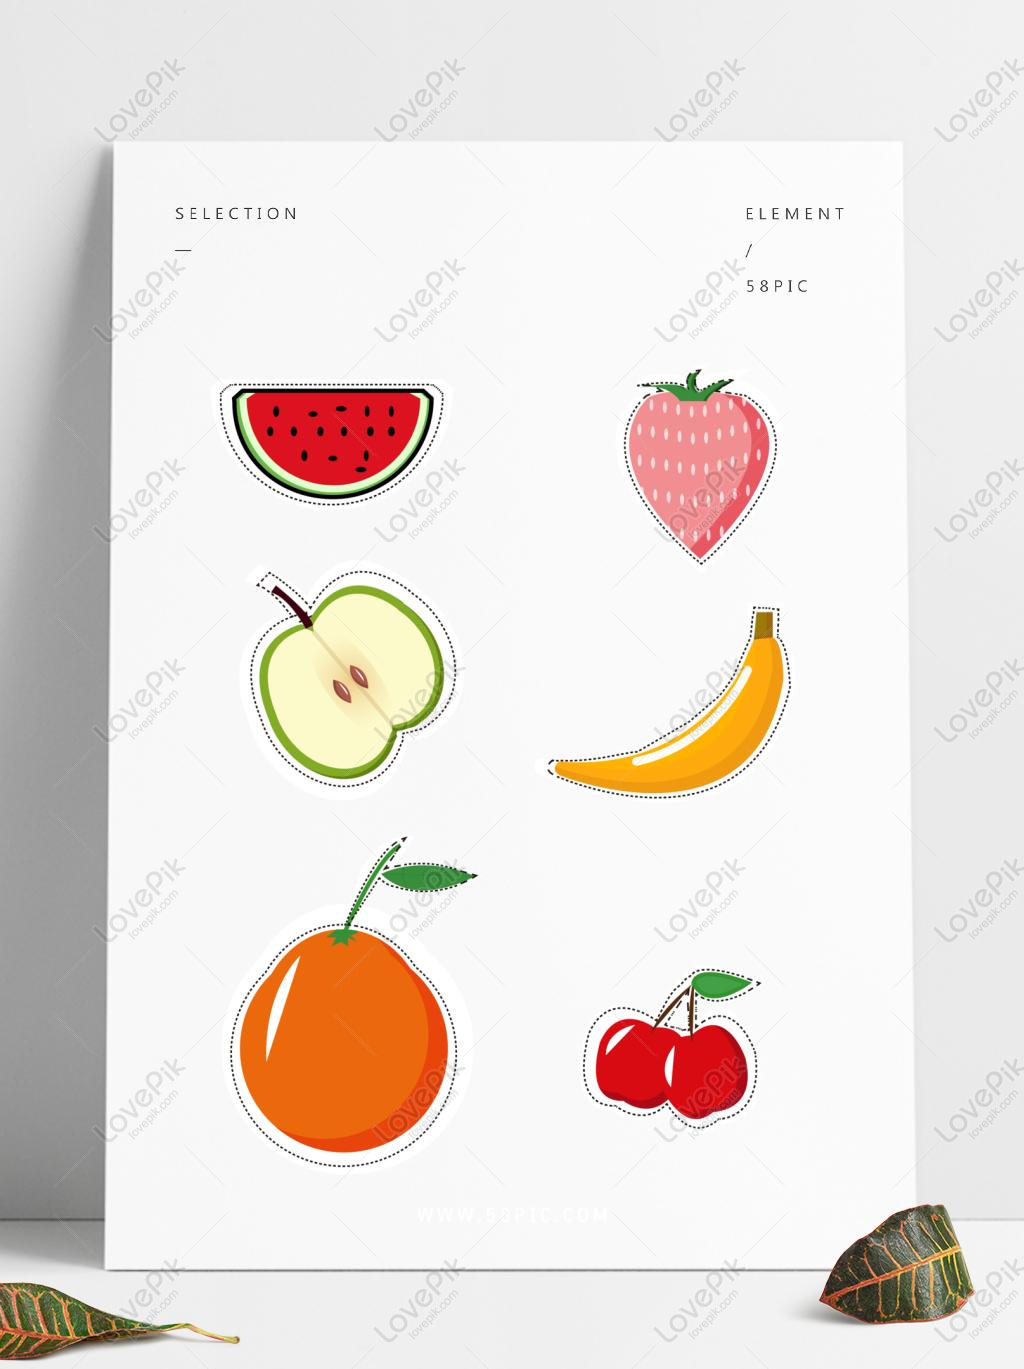 Hãy đến với hình ảnh vẽ sticker trái cây cute của chúng tôi. Bạn sẽ không thể rời mắt khỏi những họa tiết nghệ thuật tuyệt đẹp này, với những chiếc táo, chuối, dâu tây đáng yêu rực rỡ sắc màu. Cùng truyền tải niềm vui và năng lượng tích cực với những bức tranh vô cùng đáng yêu này.